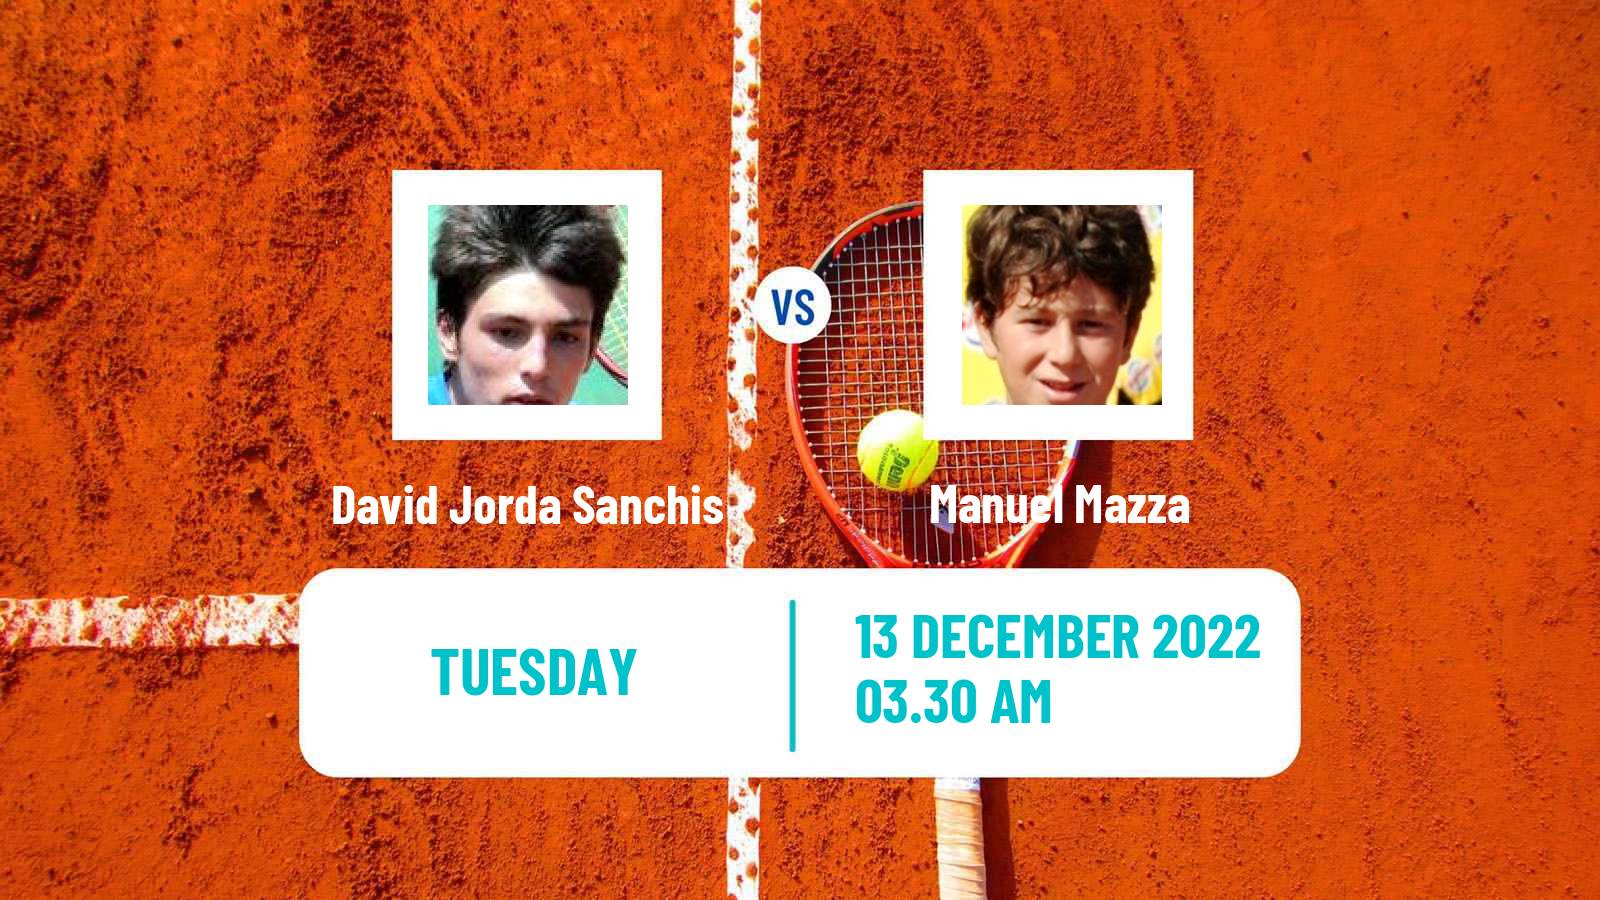 Tennis ITF Tournaments David Jorda Sanchis - Manuel Mazza